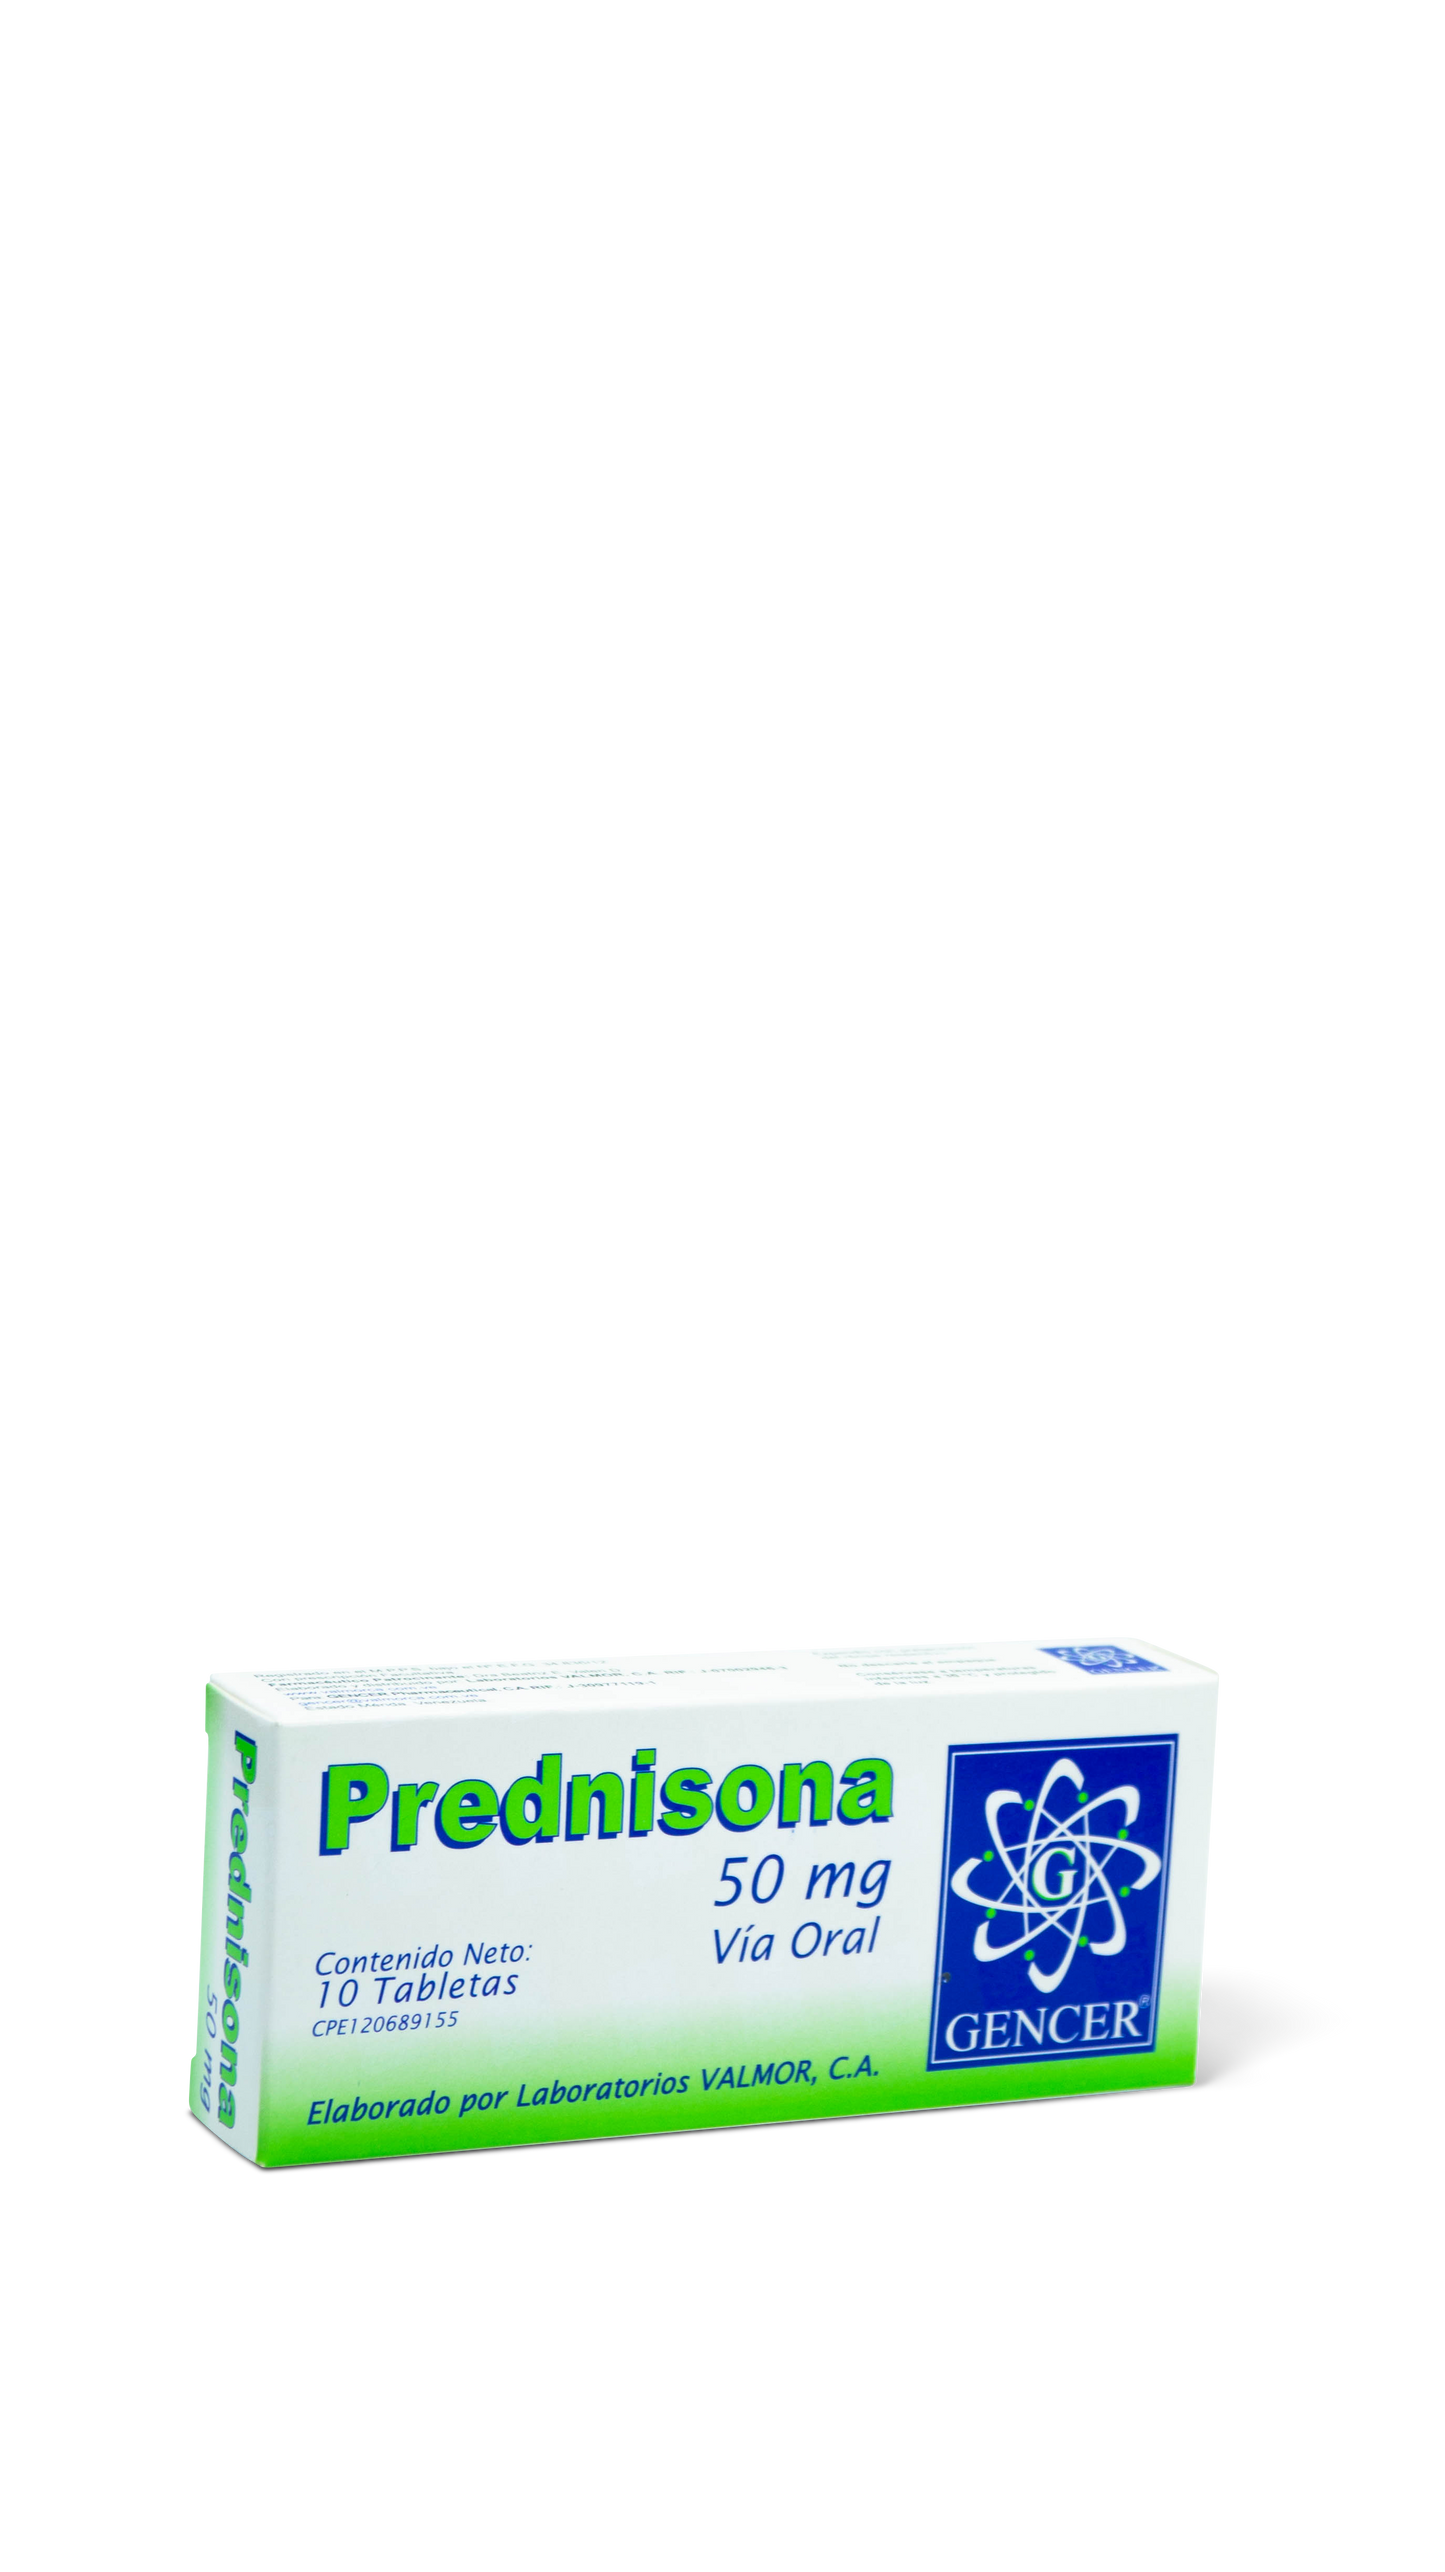 Prednisona 10 tabletas 50mg